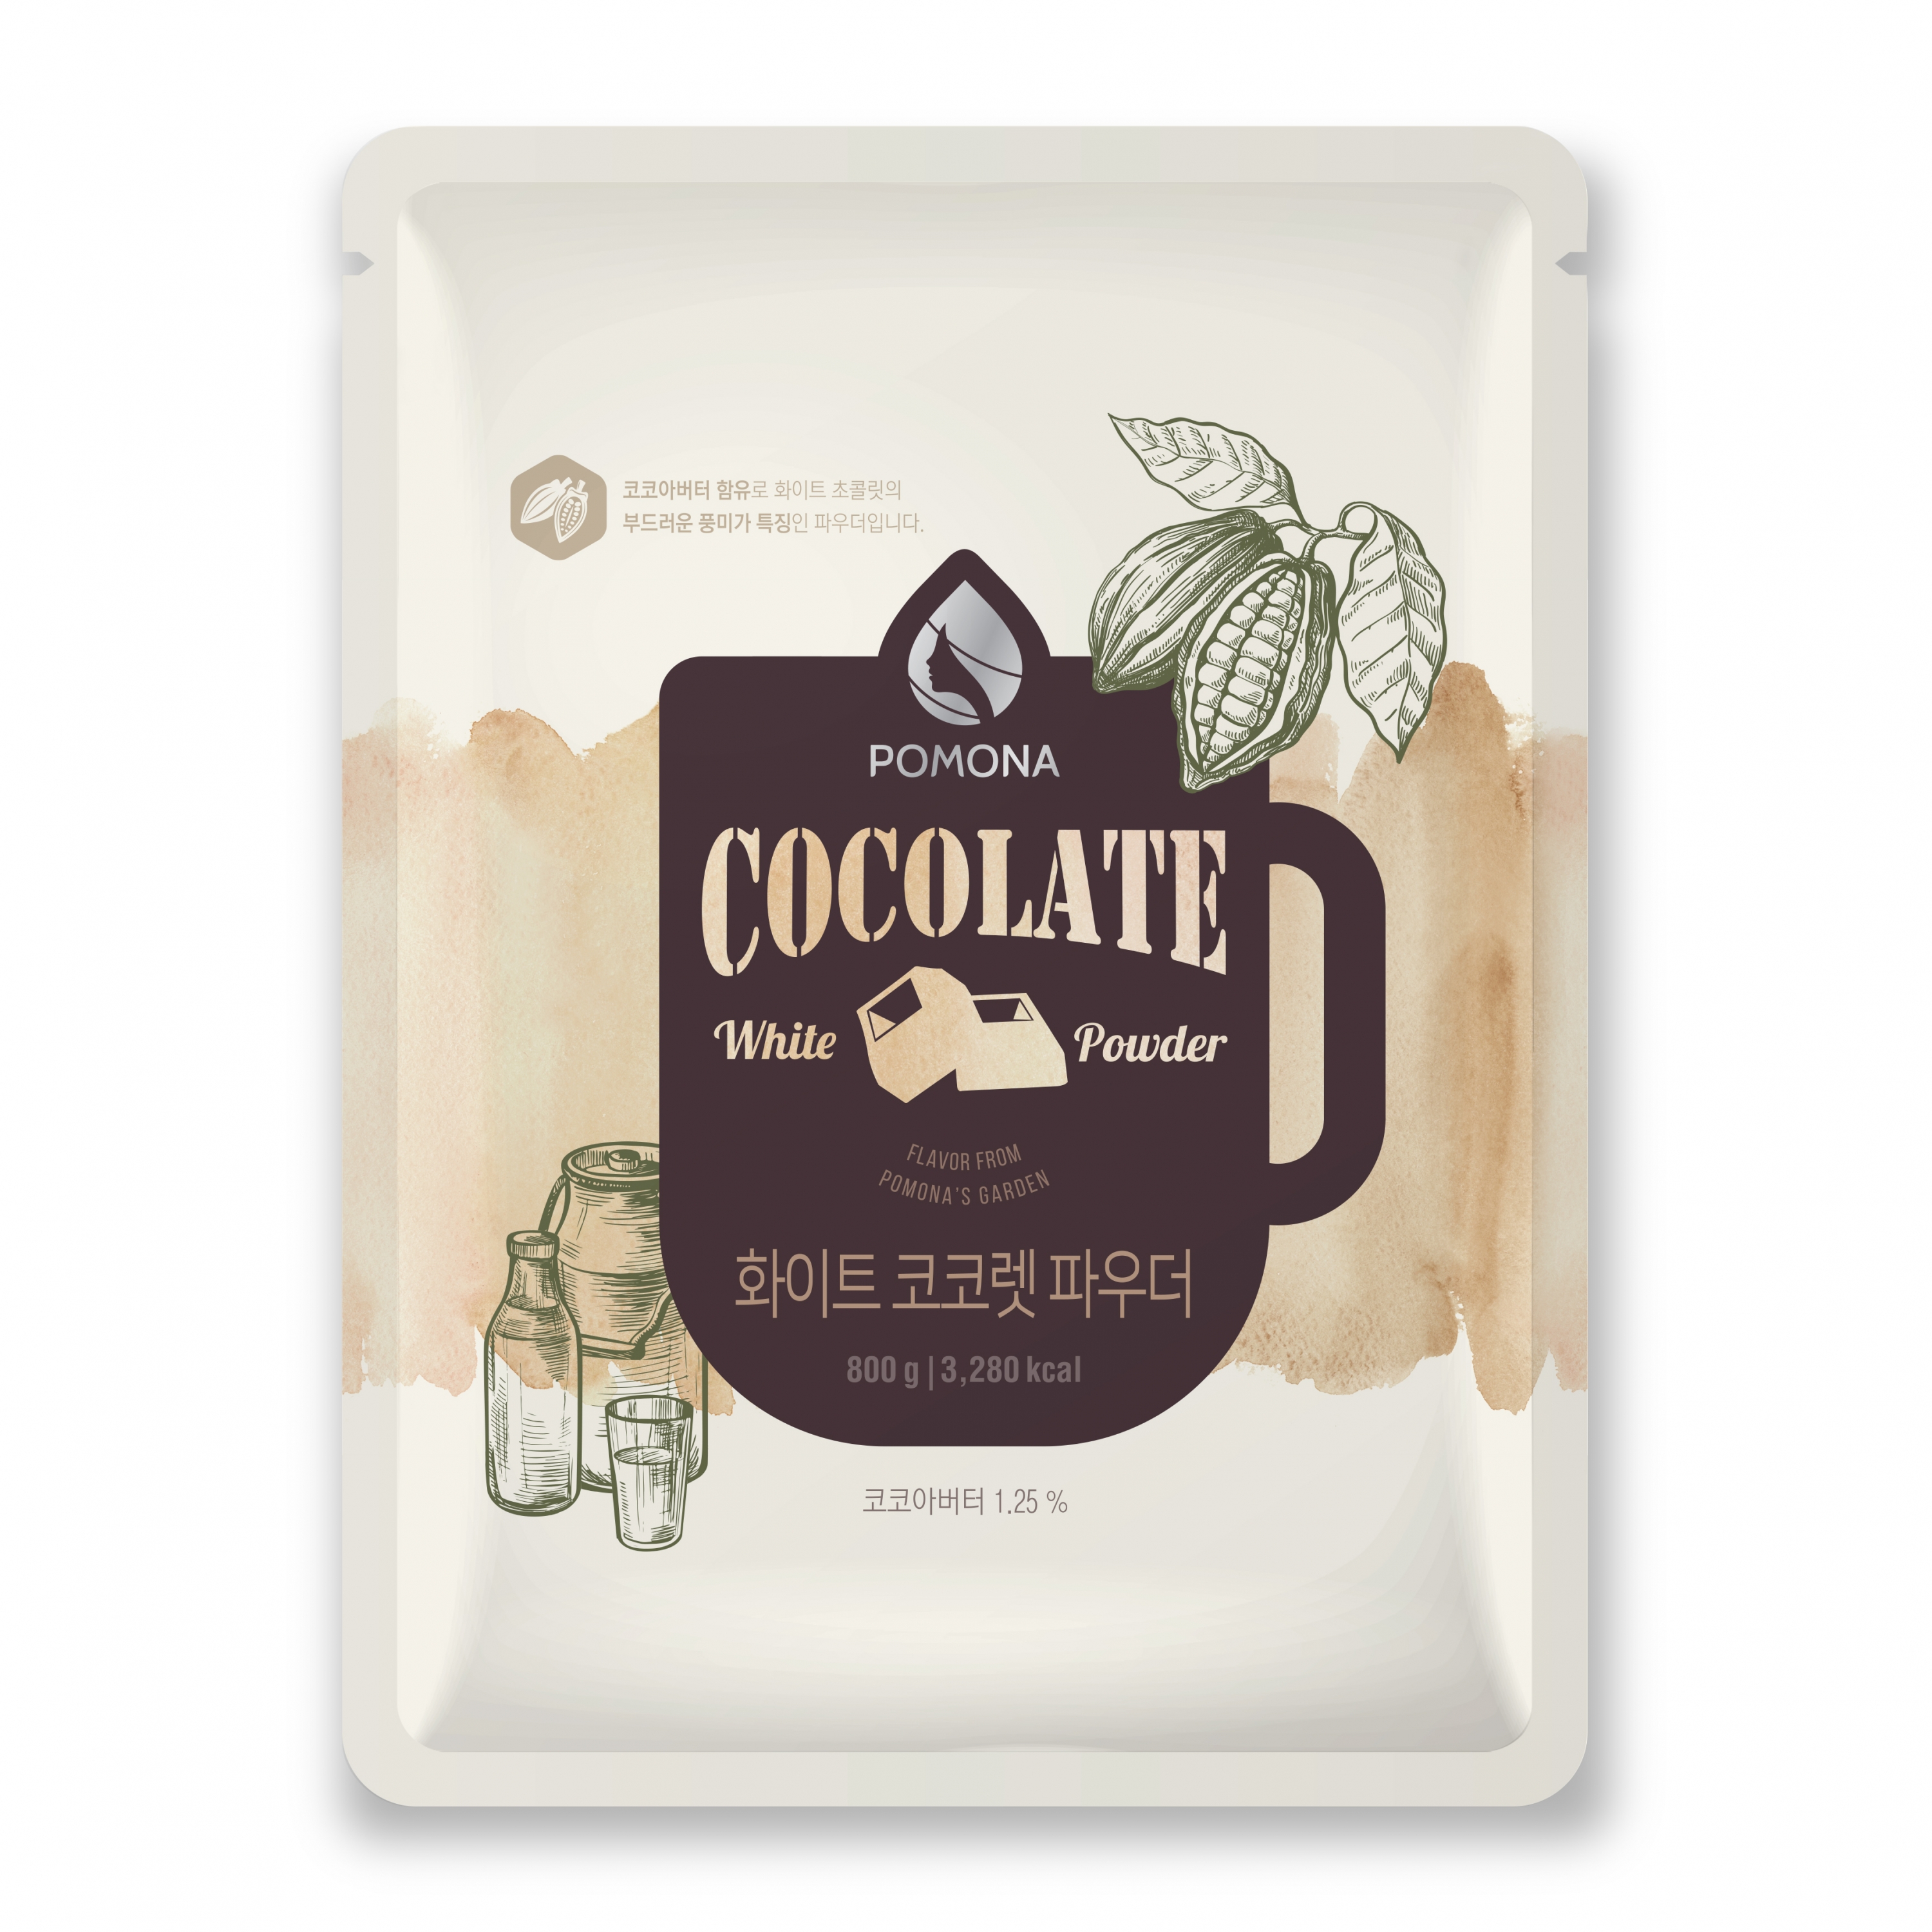 White Chocolate Powder 800g - Bột Socola Trắng (Hàng Order)